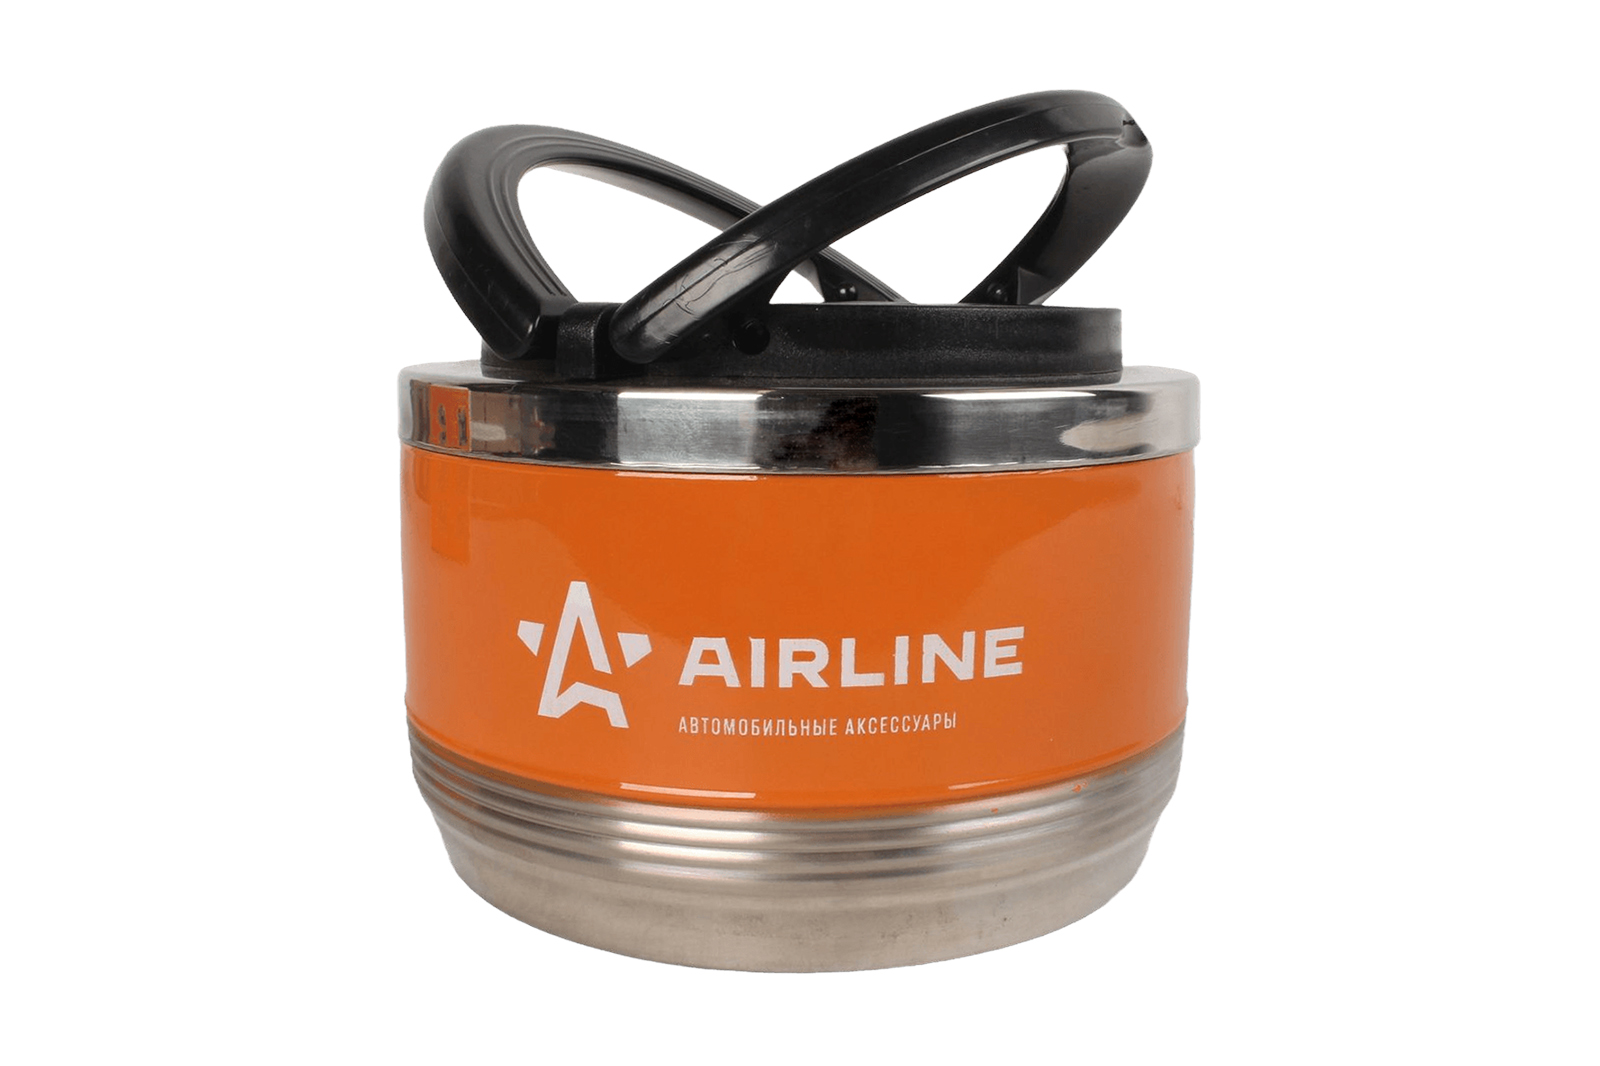 Термос AIRLINE ланч-бокс 0.7л,1 контейнер,с ручкой,нержавеющая сталь,оранжево-черный фотография №1